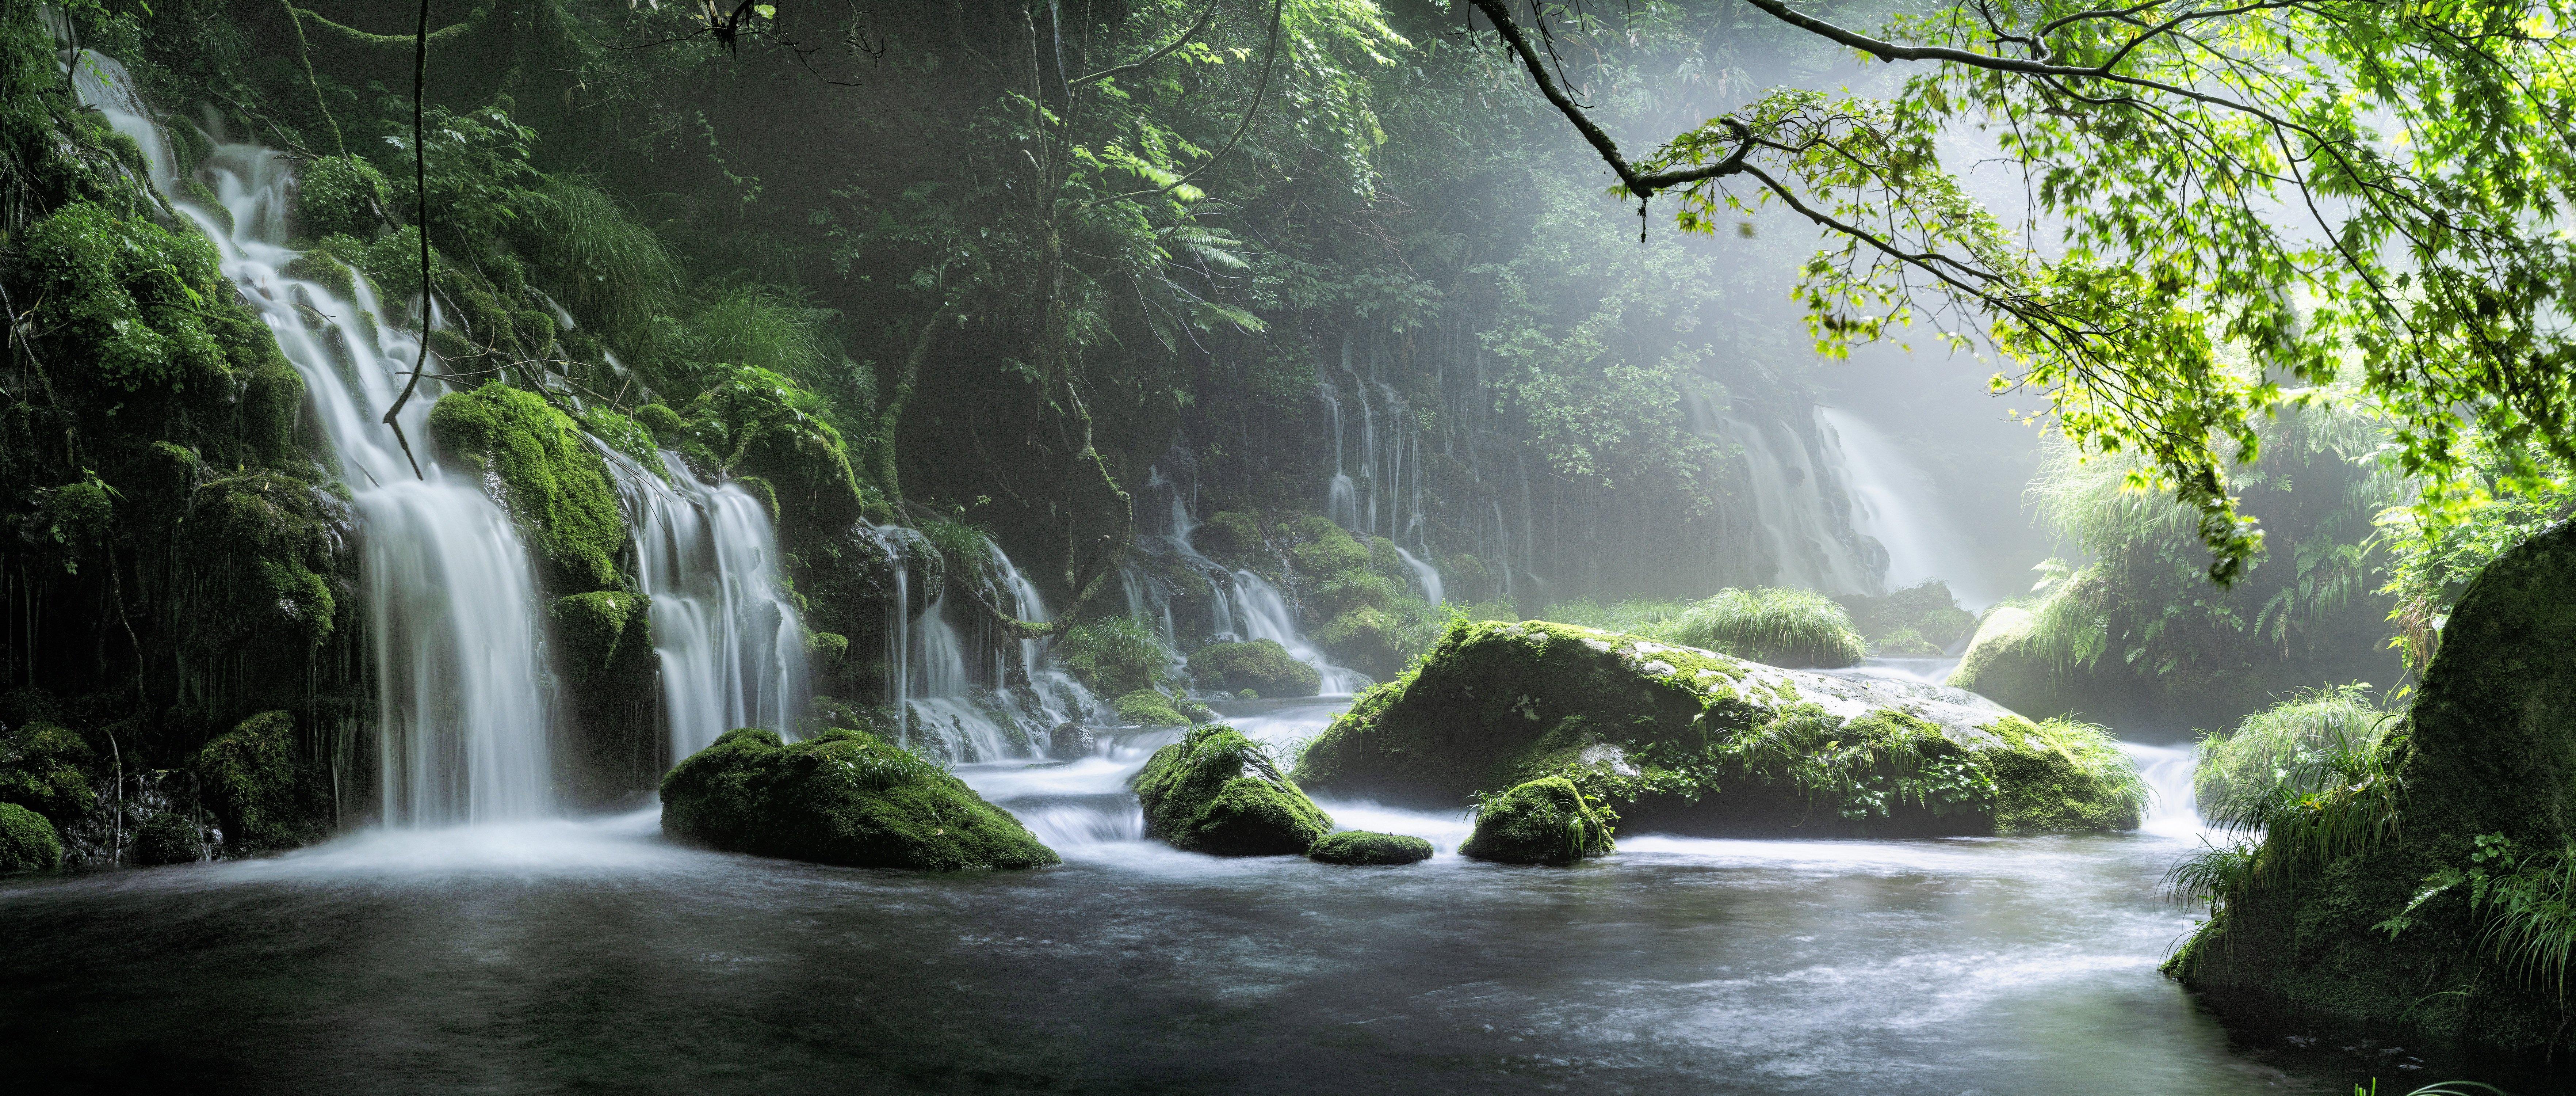 waterfall, forest, nature, hd, 4k, 5k, 8k Gallery HD Wallpaper